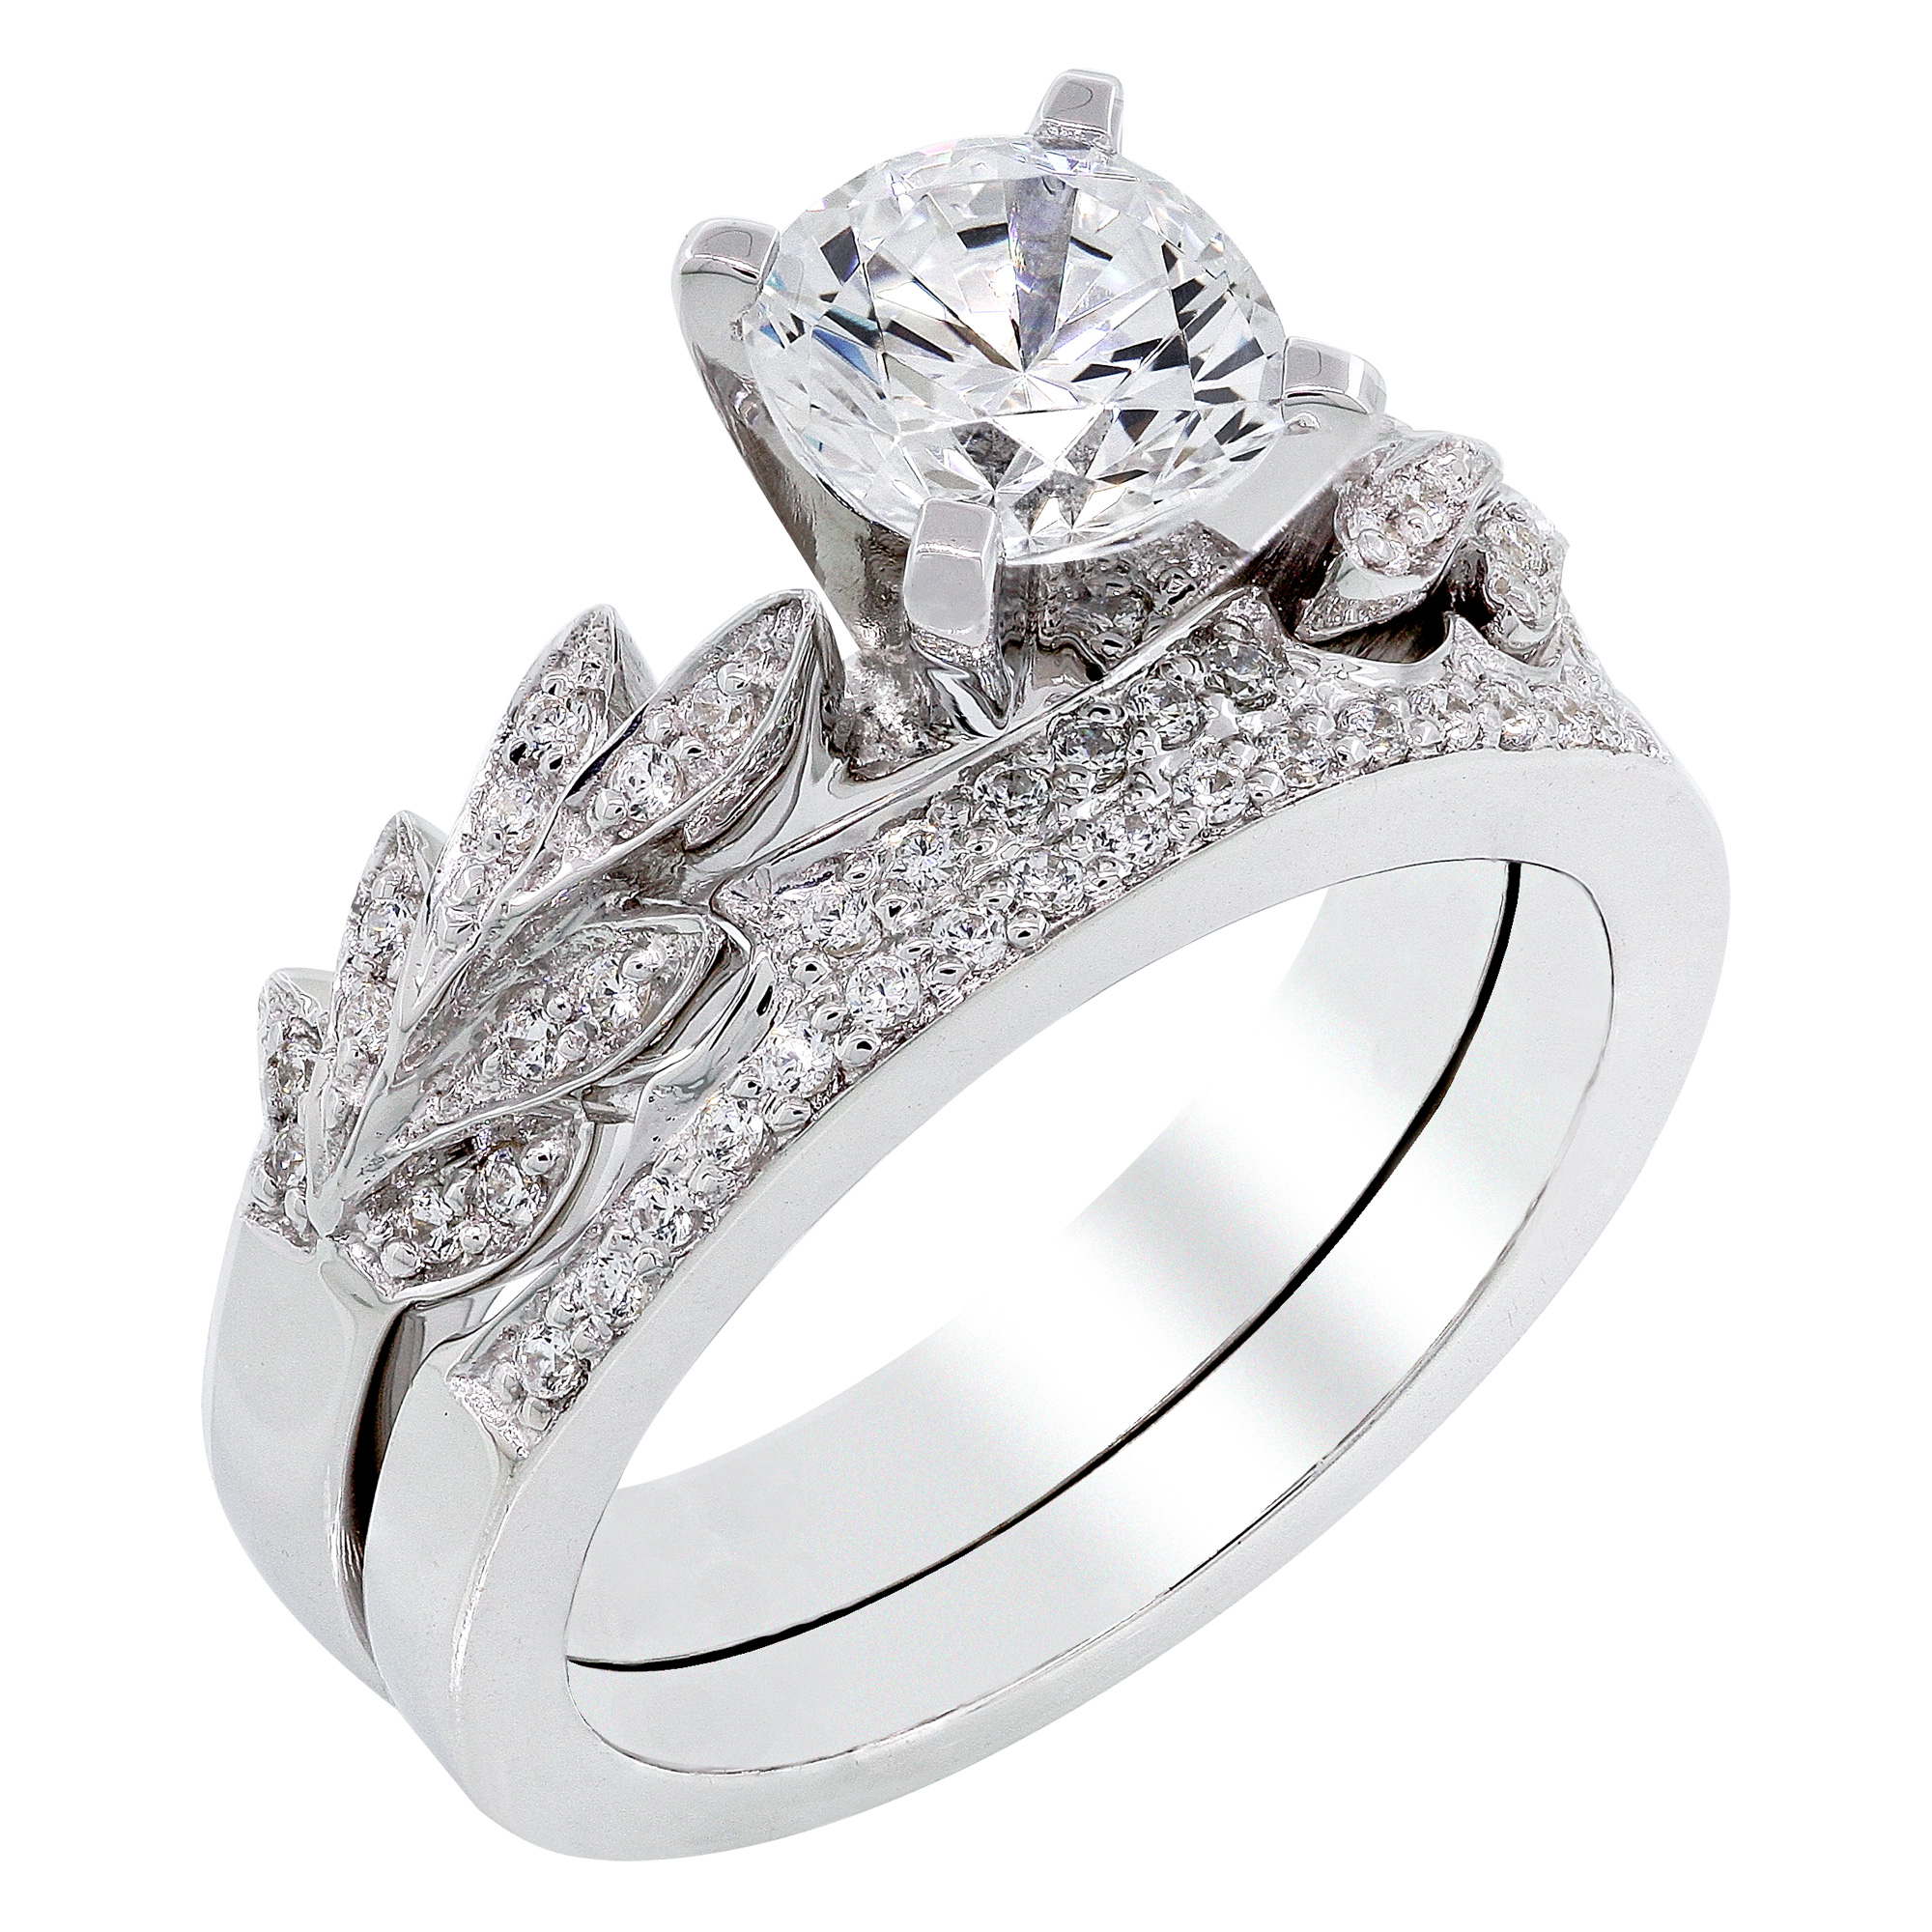 Ri n. Дизайнерские помолвочные кольца. Engagement Ring. Engagement Diamond Ring. Diamond Engagement Rings collection.